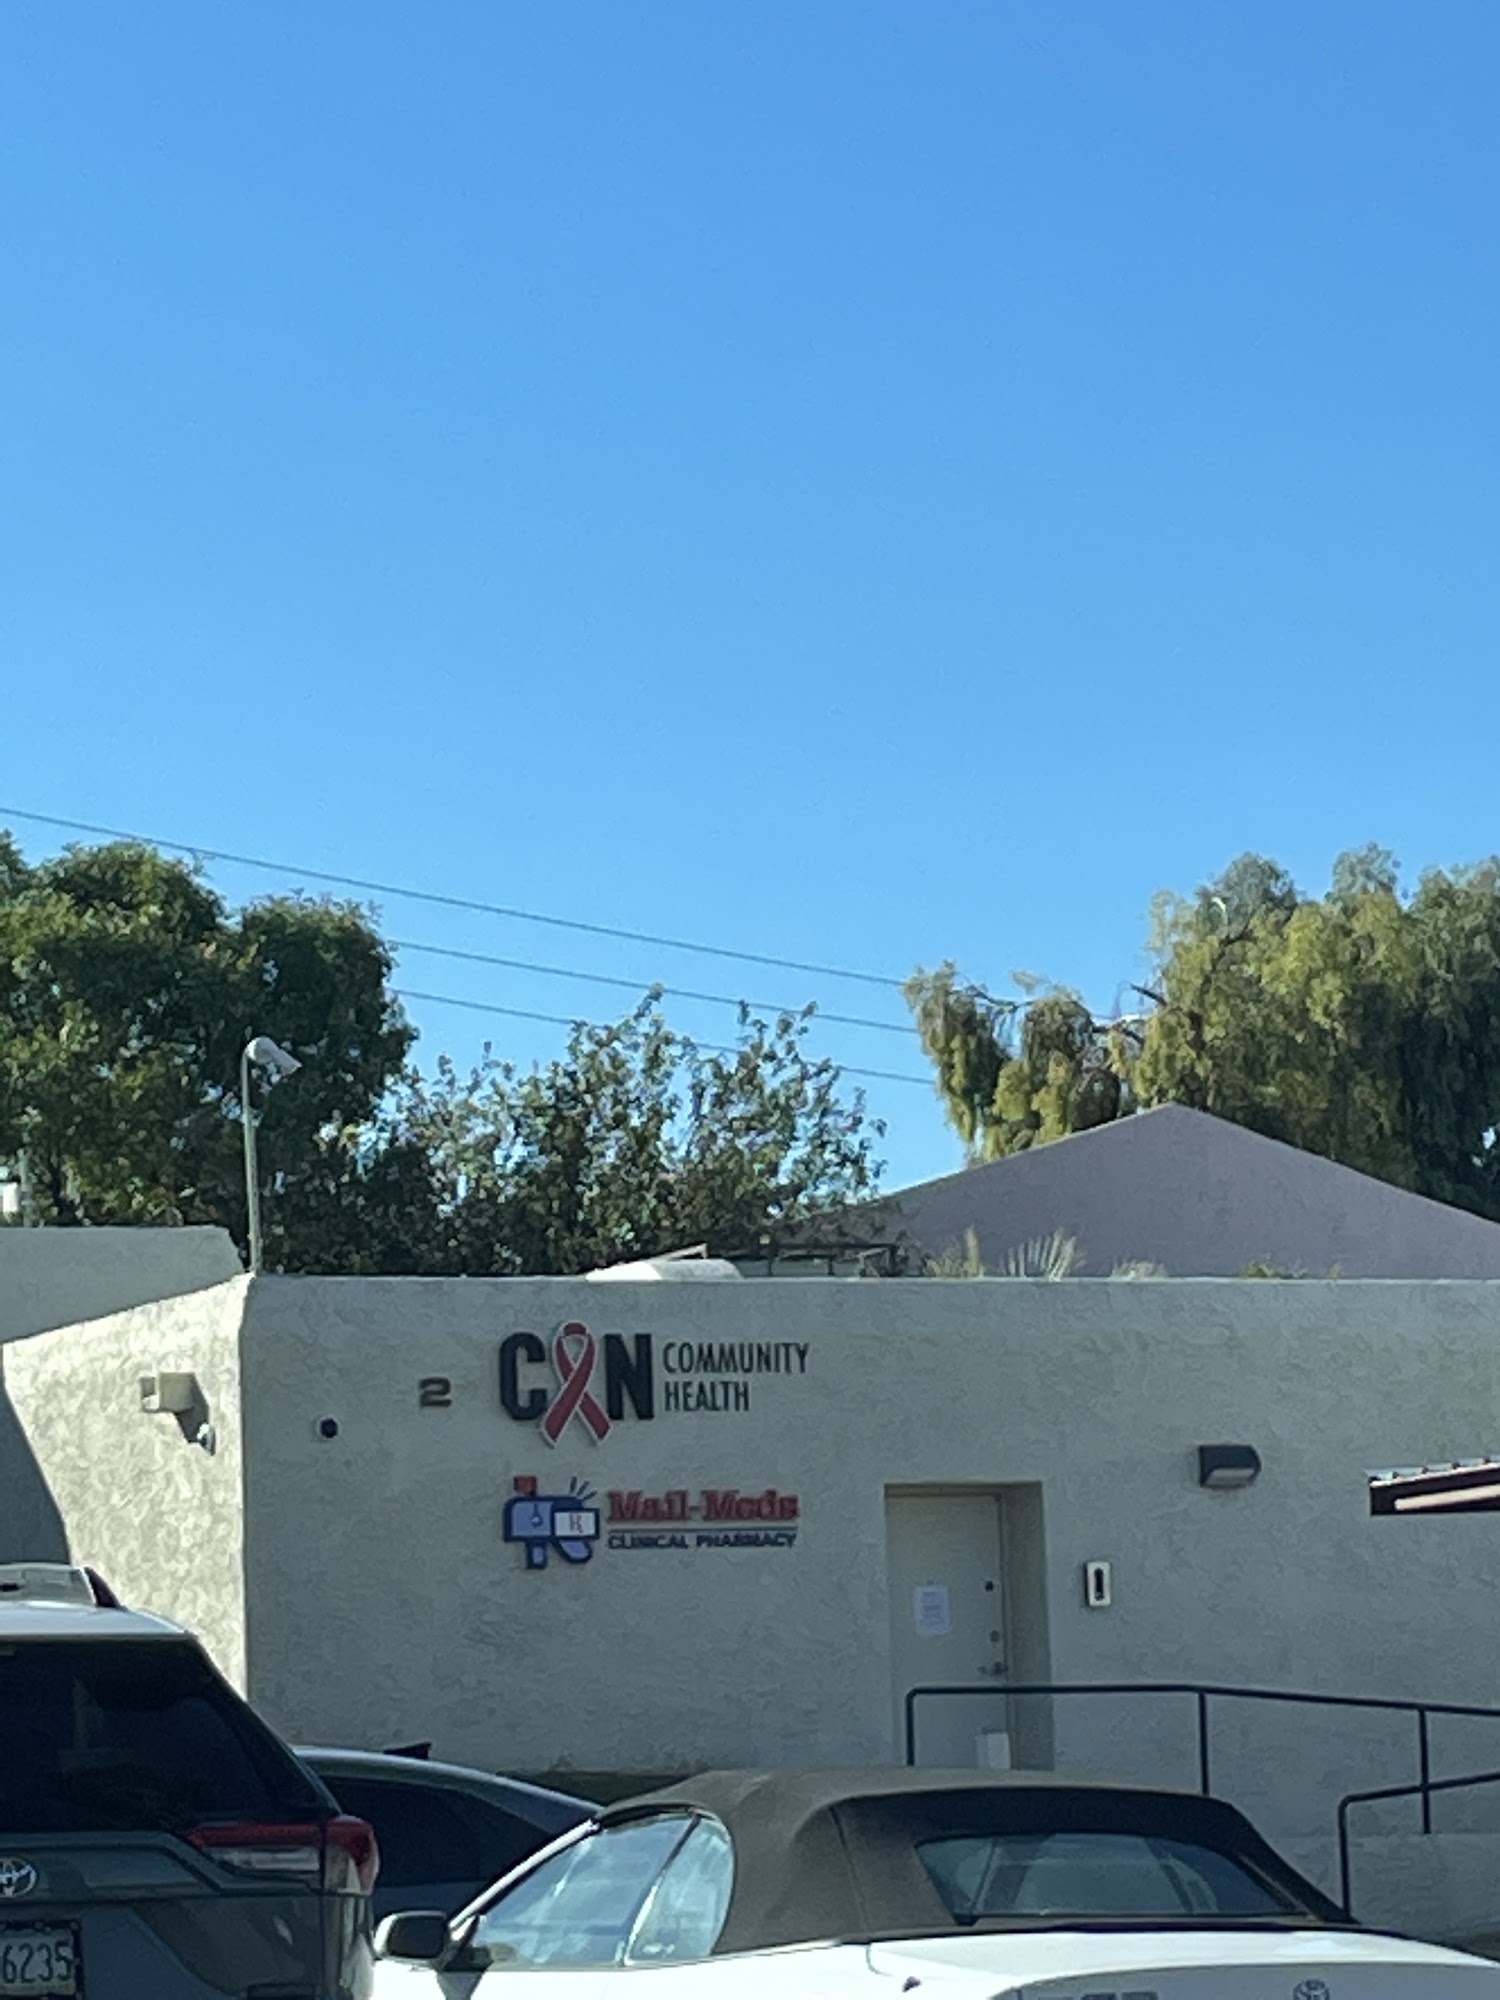 CAN Community Health - Phoenix, AZ